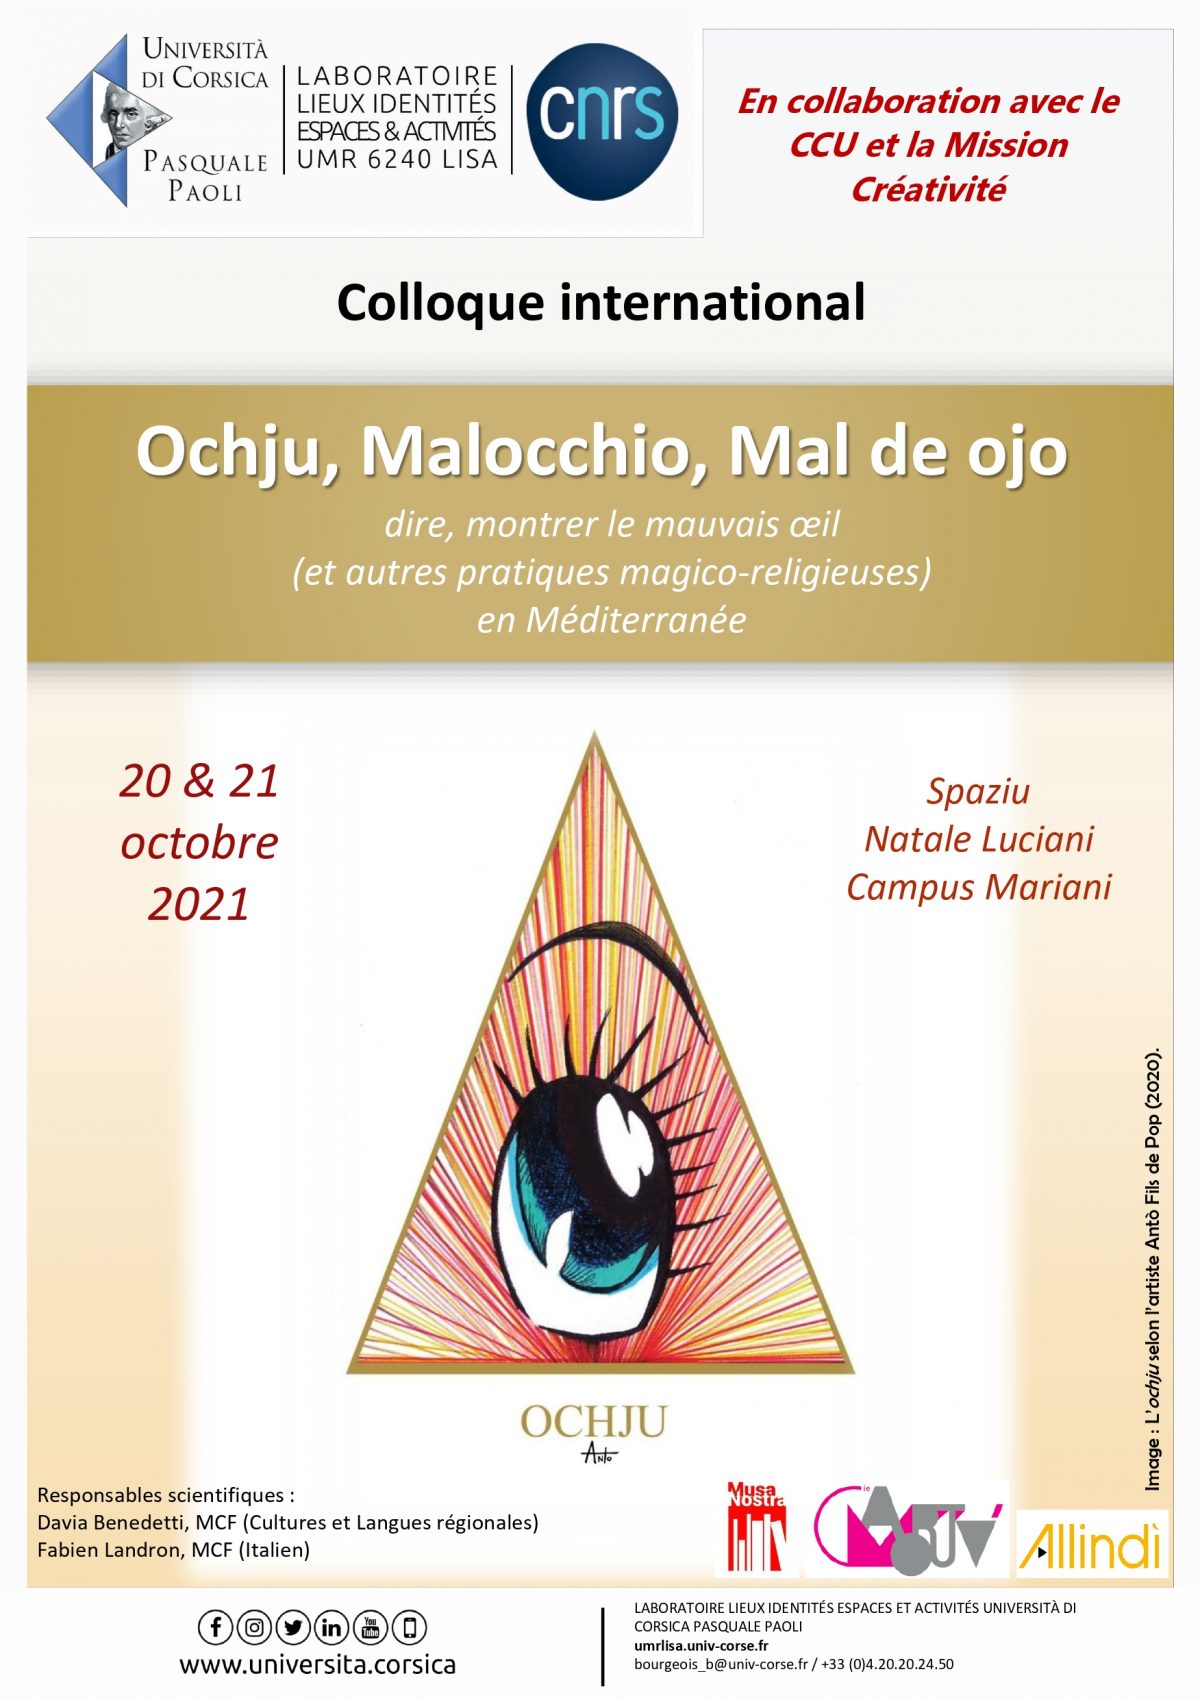 Colloque international Ochju, Malocchio, Mal de ojo